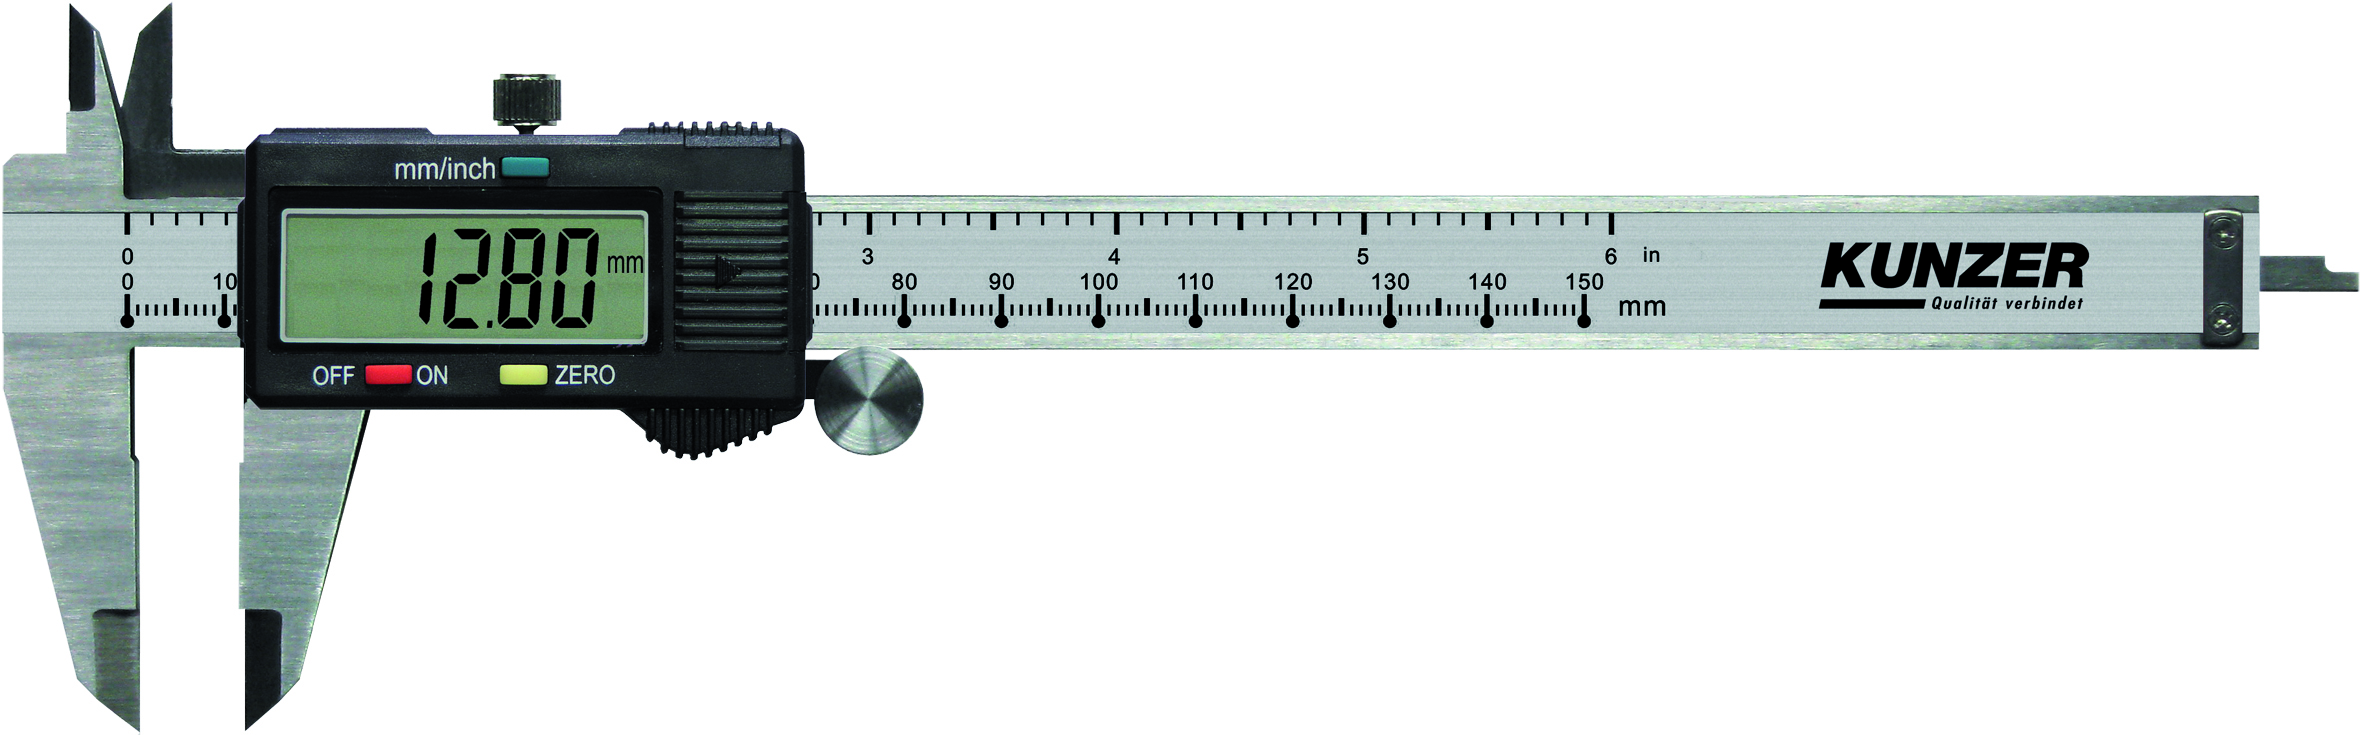 Elektronischer Messschieber Digitale Anzeige Messbereich: 0 bis 150 mm